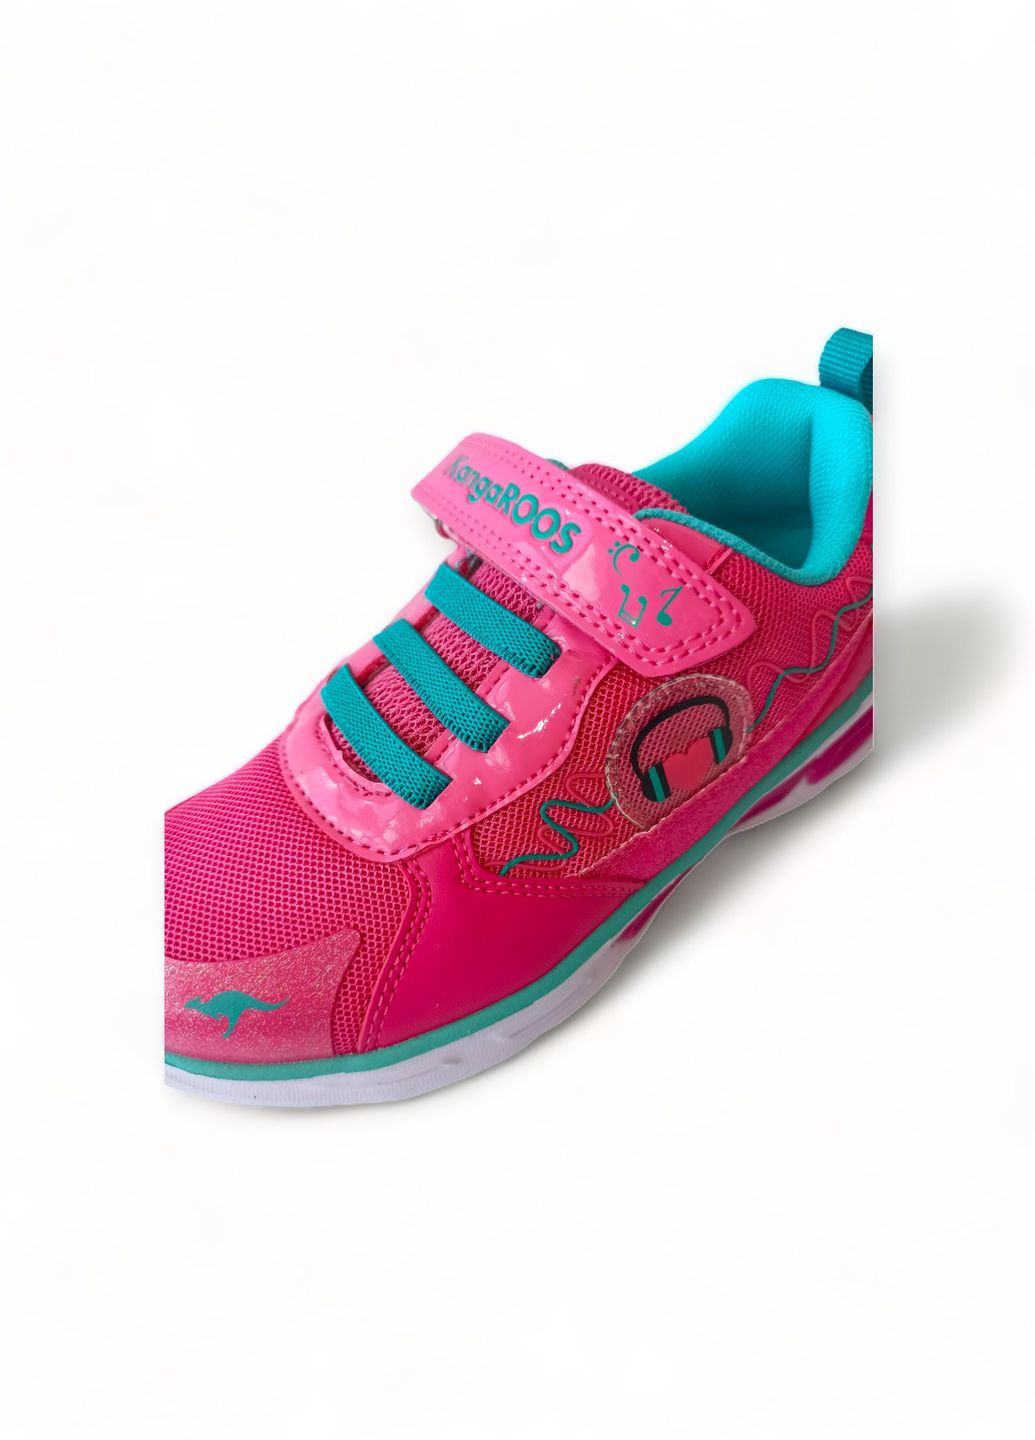 Рожеві всесезонні кросівки дитячі для дівчинки 18497/6056 рожеві з мигалками (32) Kangaroos